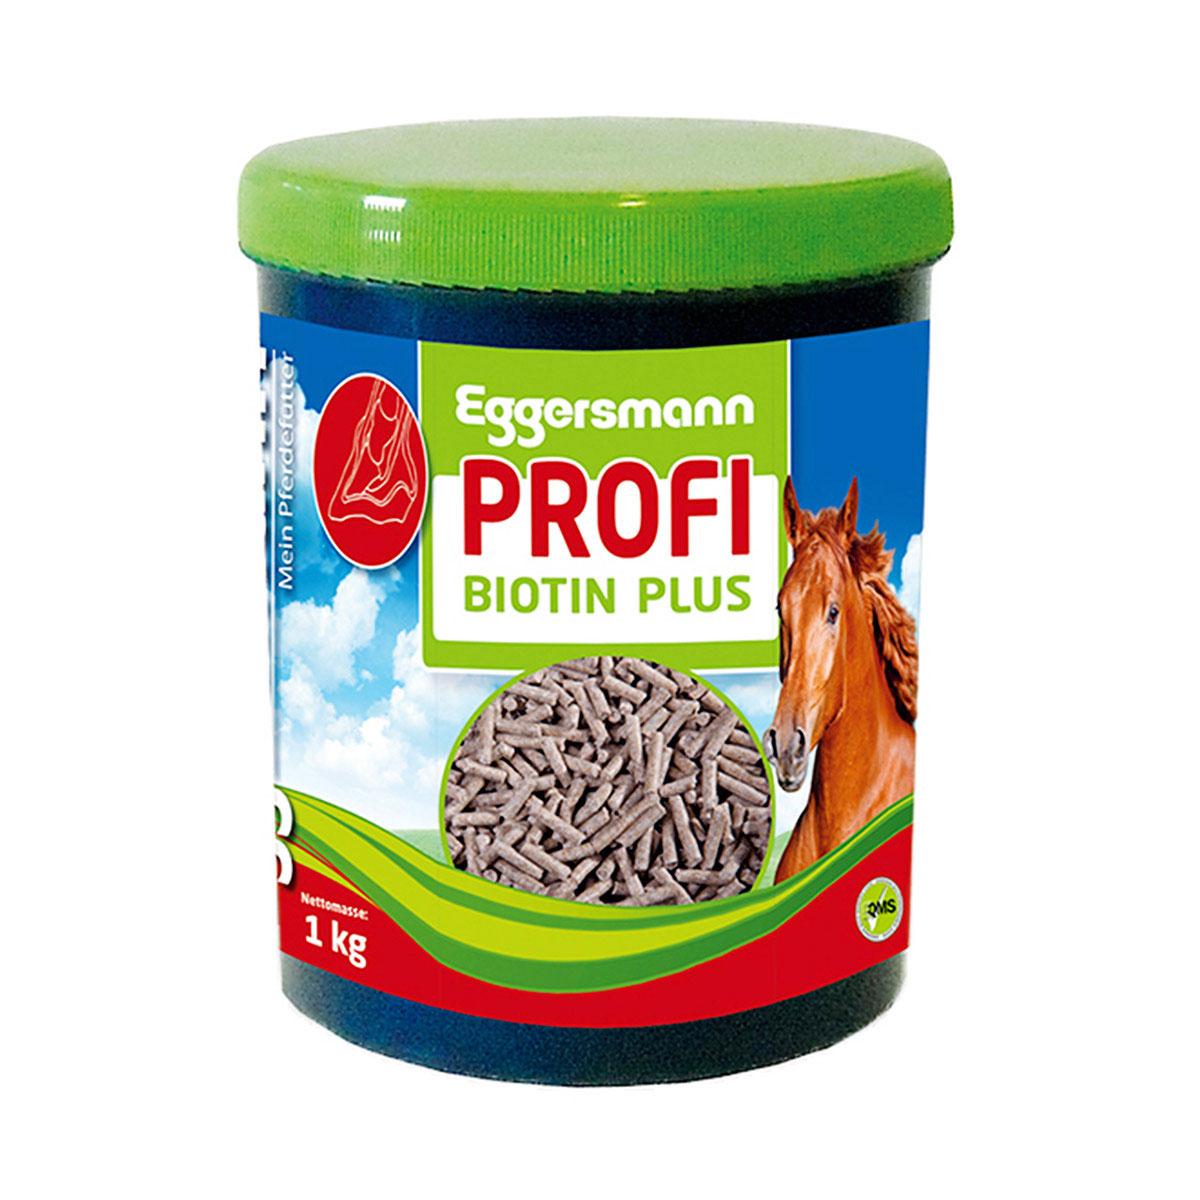 Eggersmann Profi Biotin Plus 1 kg